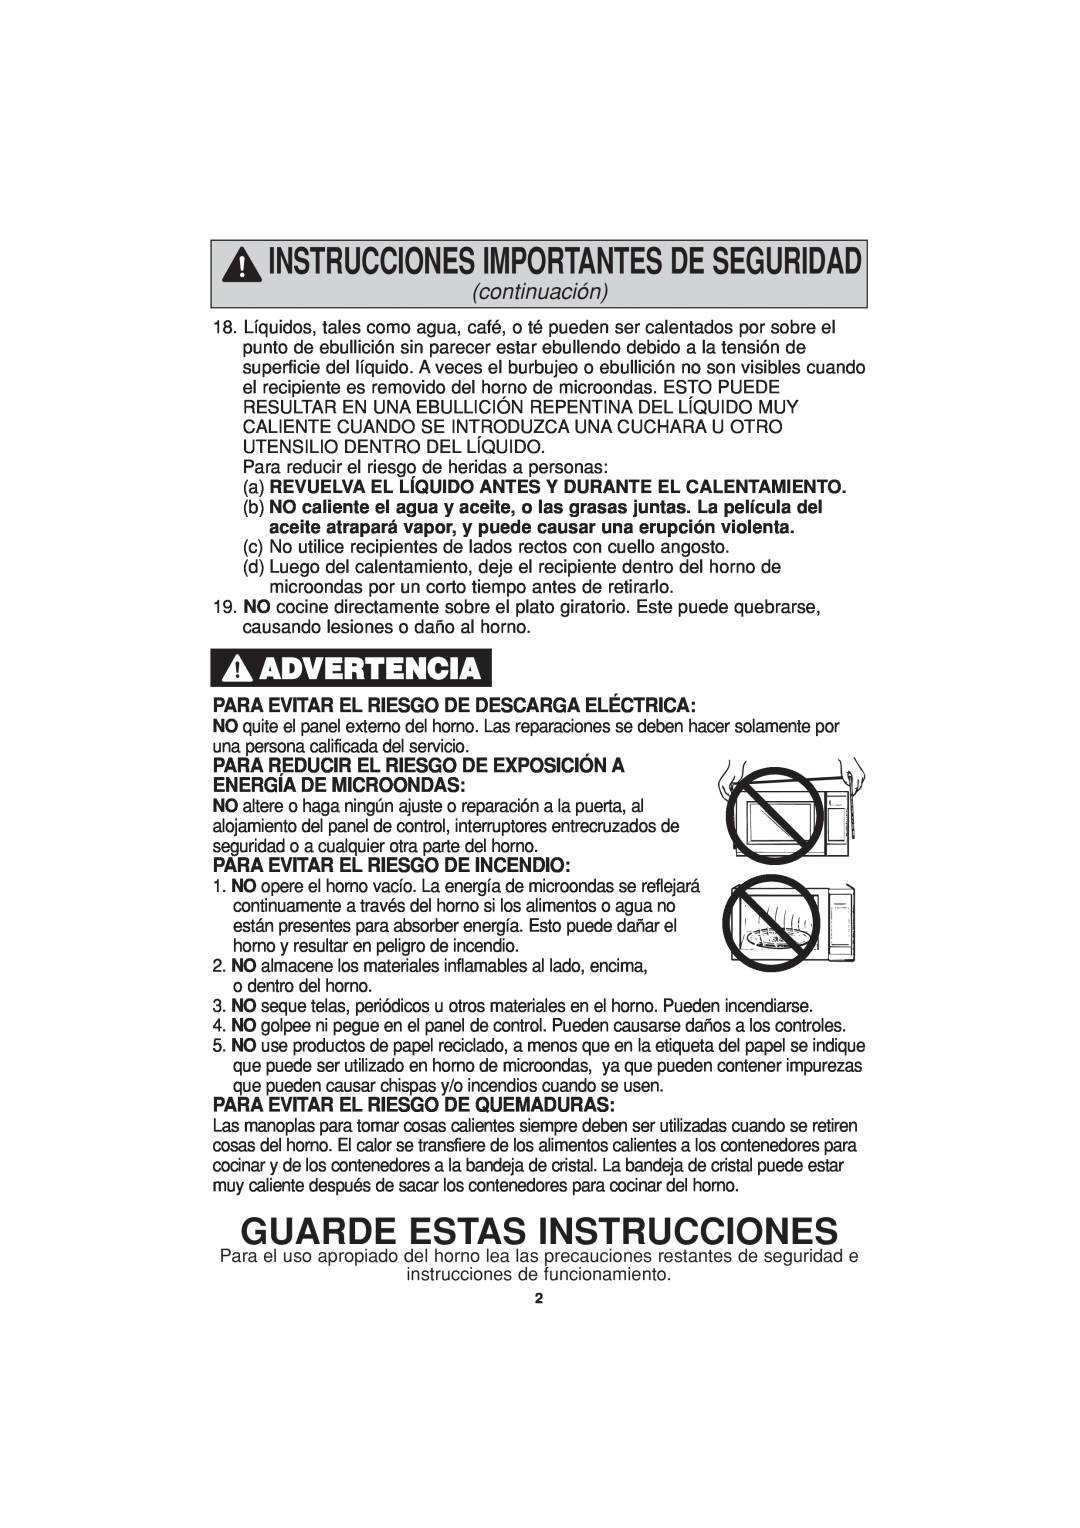 Panasonic NN-H624 Guarde Estas Instrucciones, Advertencia, continuación, Para Evitar El Riesgo De Descarga Eléctrica 